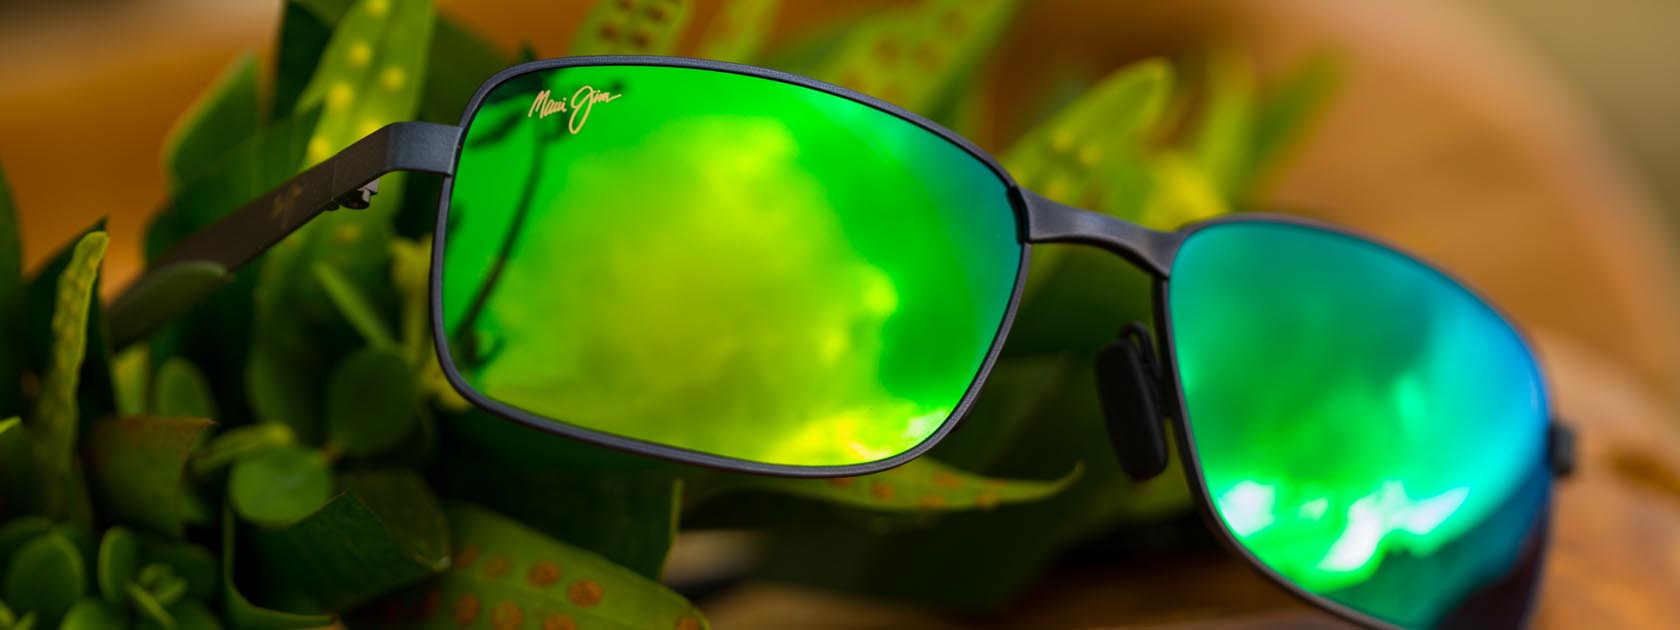 occhiali da sole con montatura metallica e lenti verdi riflettenti mostrati su foglie tropicali verdi